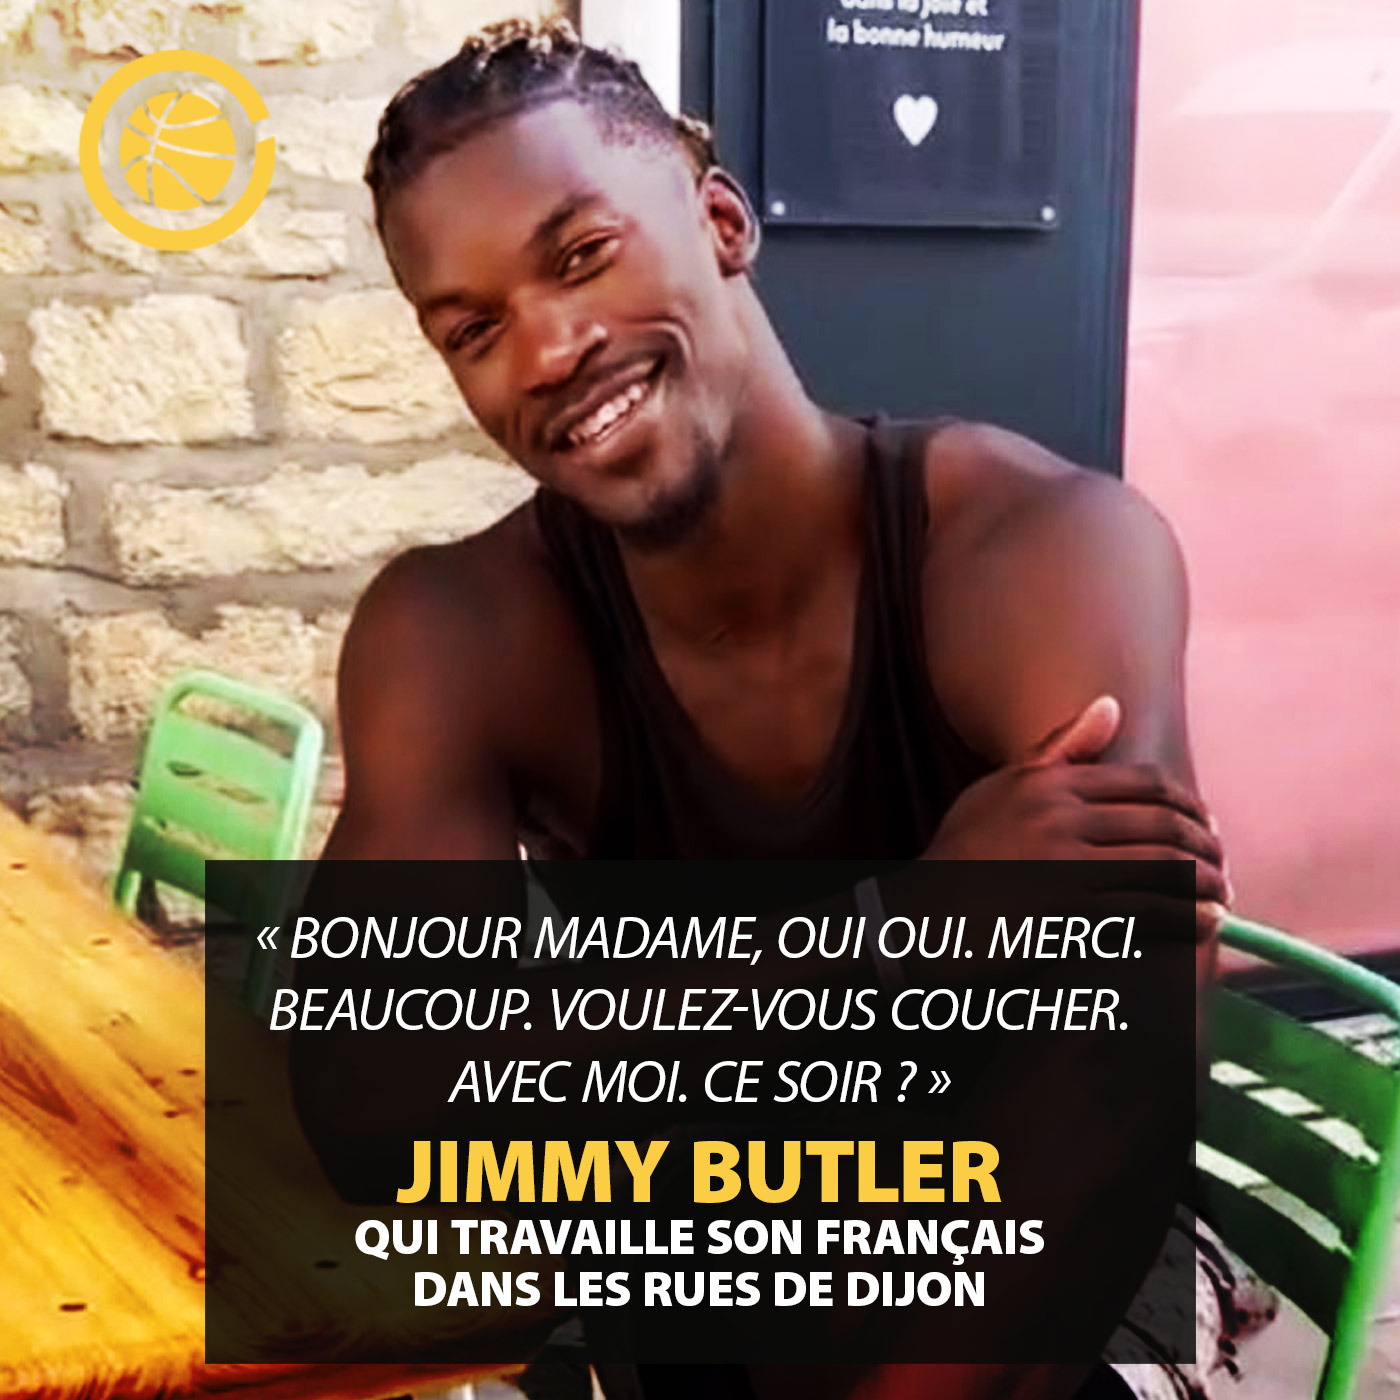 Jimmy Butler travaille son français dans les rues de Dijon